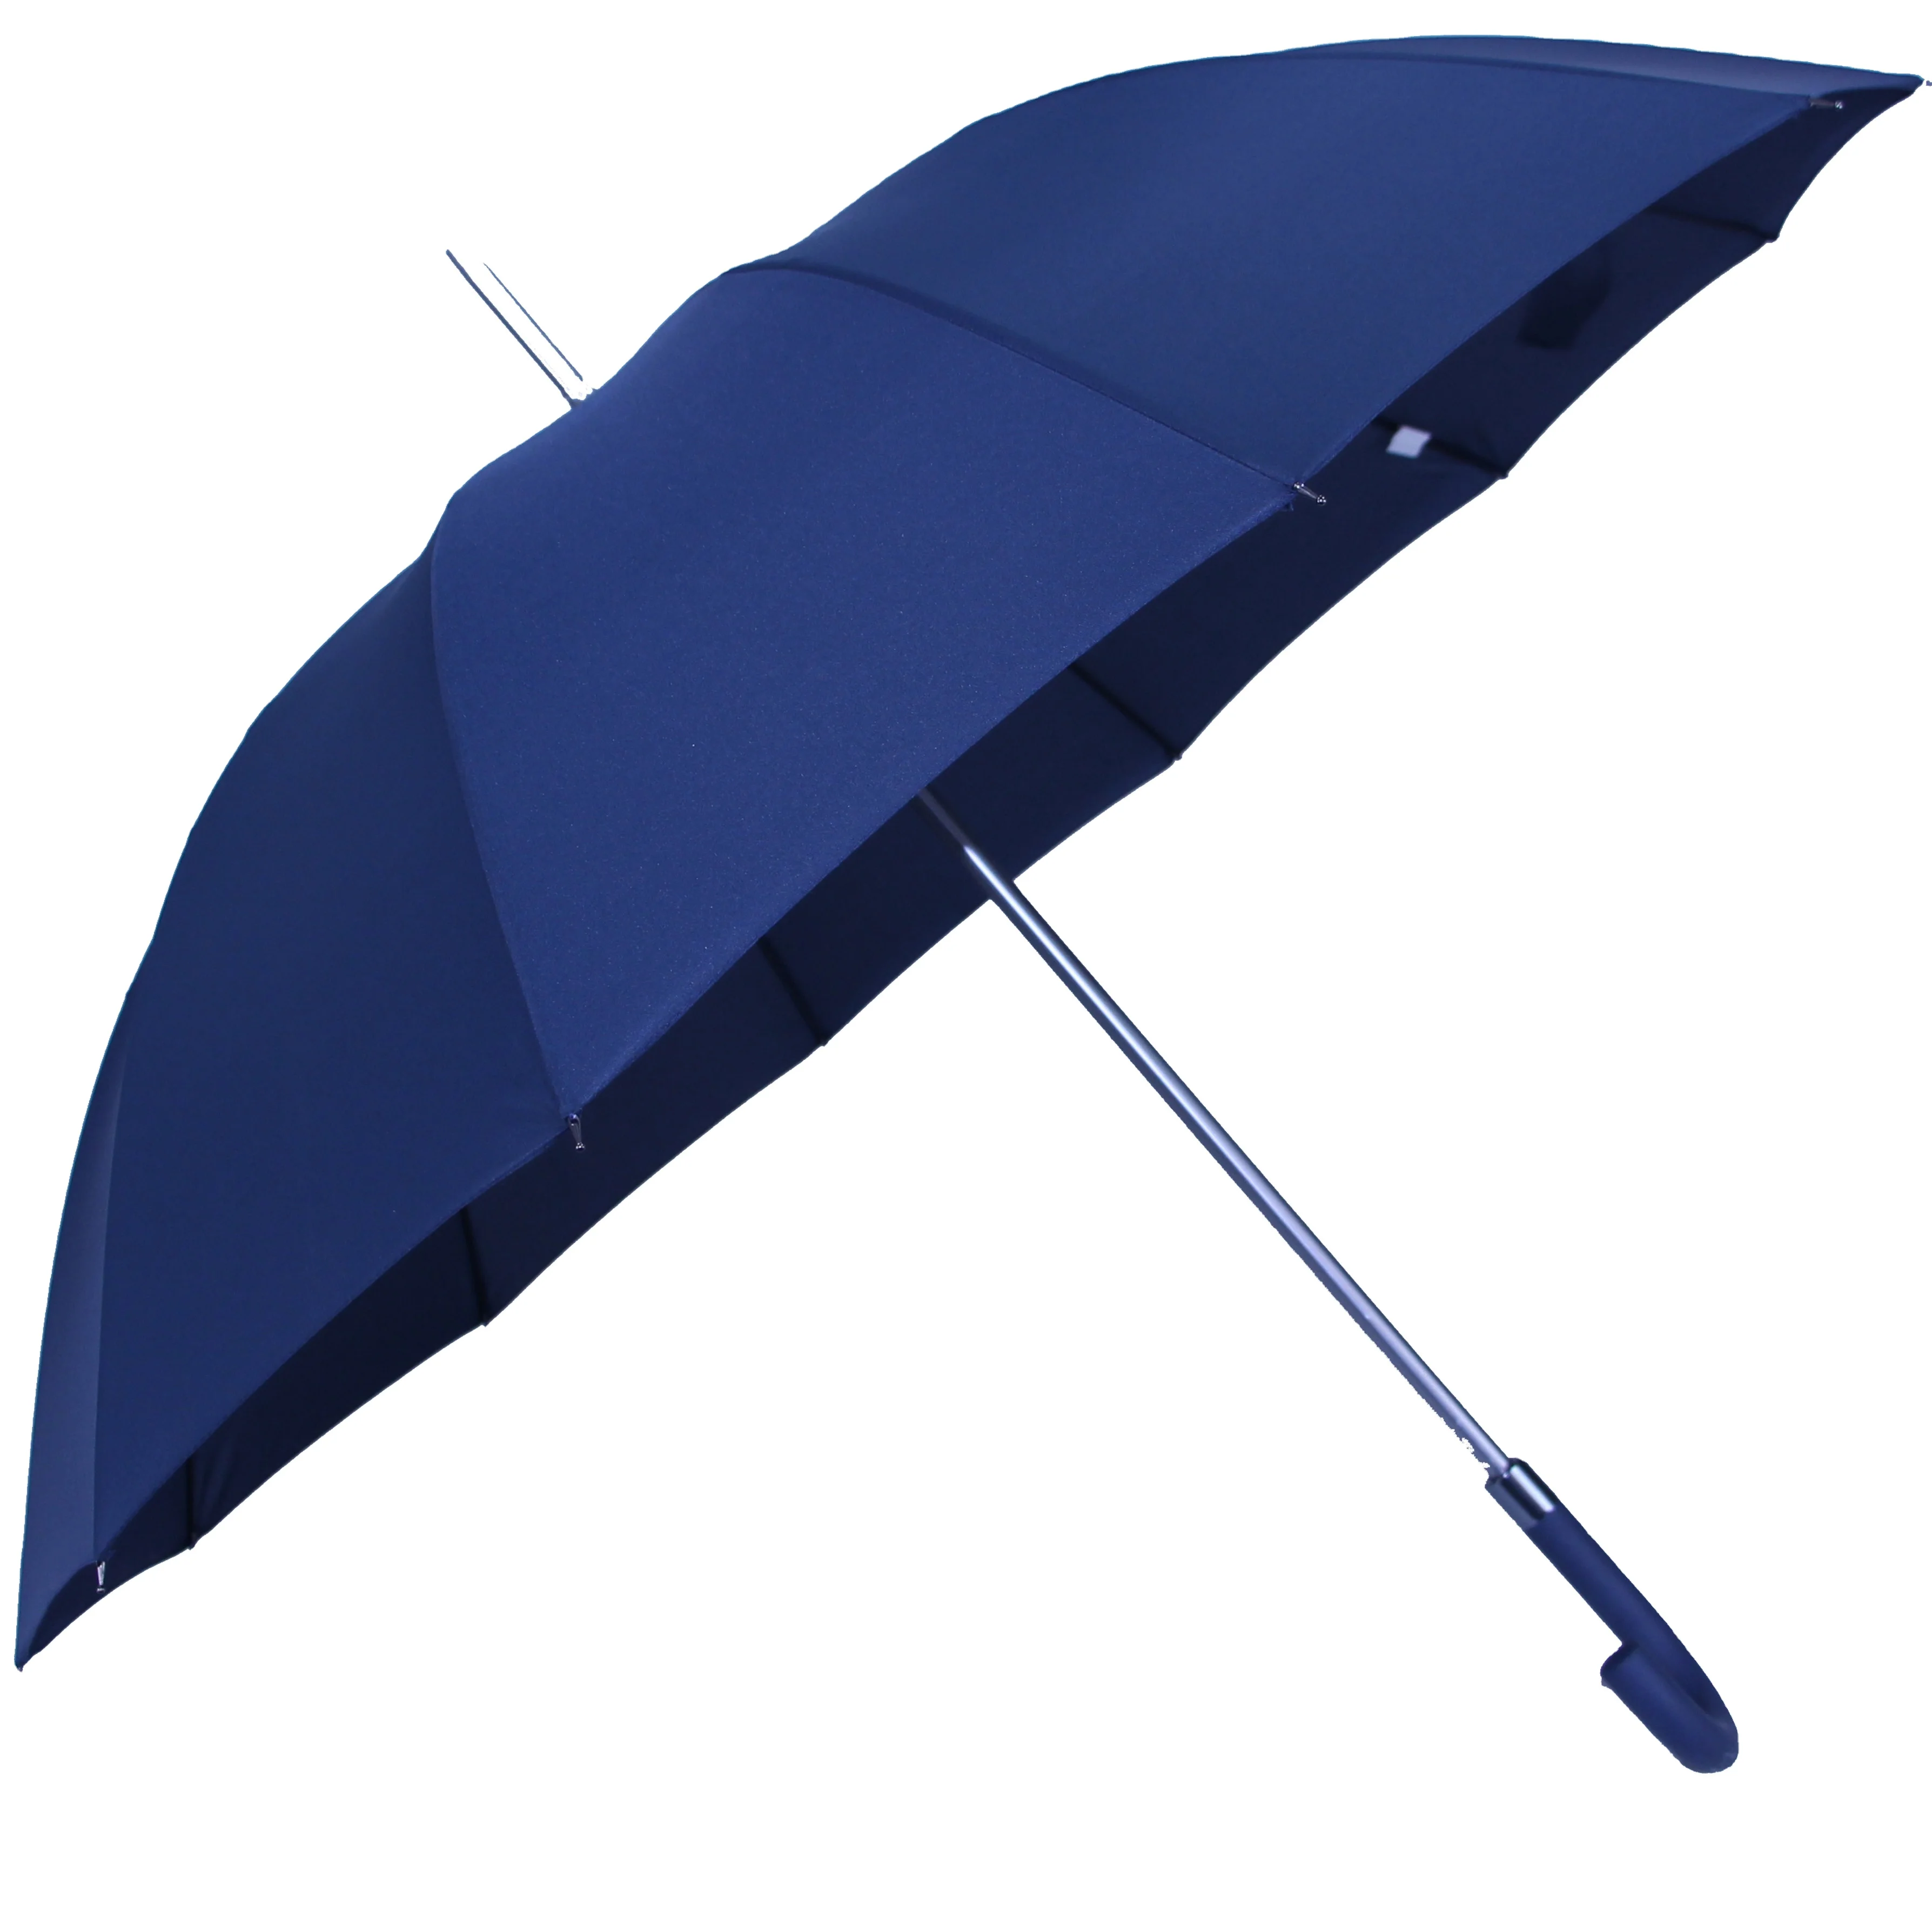 Gran Recta Sombrilla Para La Lluvia Paraguas Al Aire Libre - Buy Paraguas Para Exteriores,Paraguas Para Lluvia,Paraguas Impermeable Product on Alibaba.com